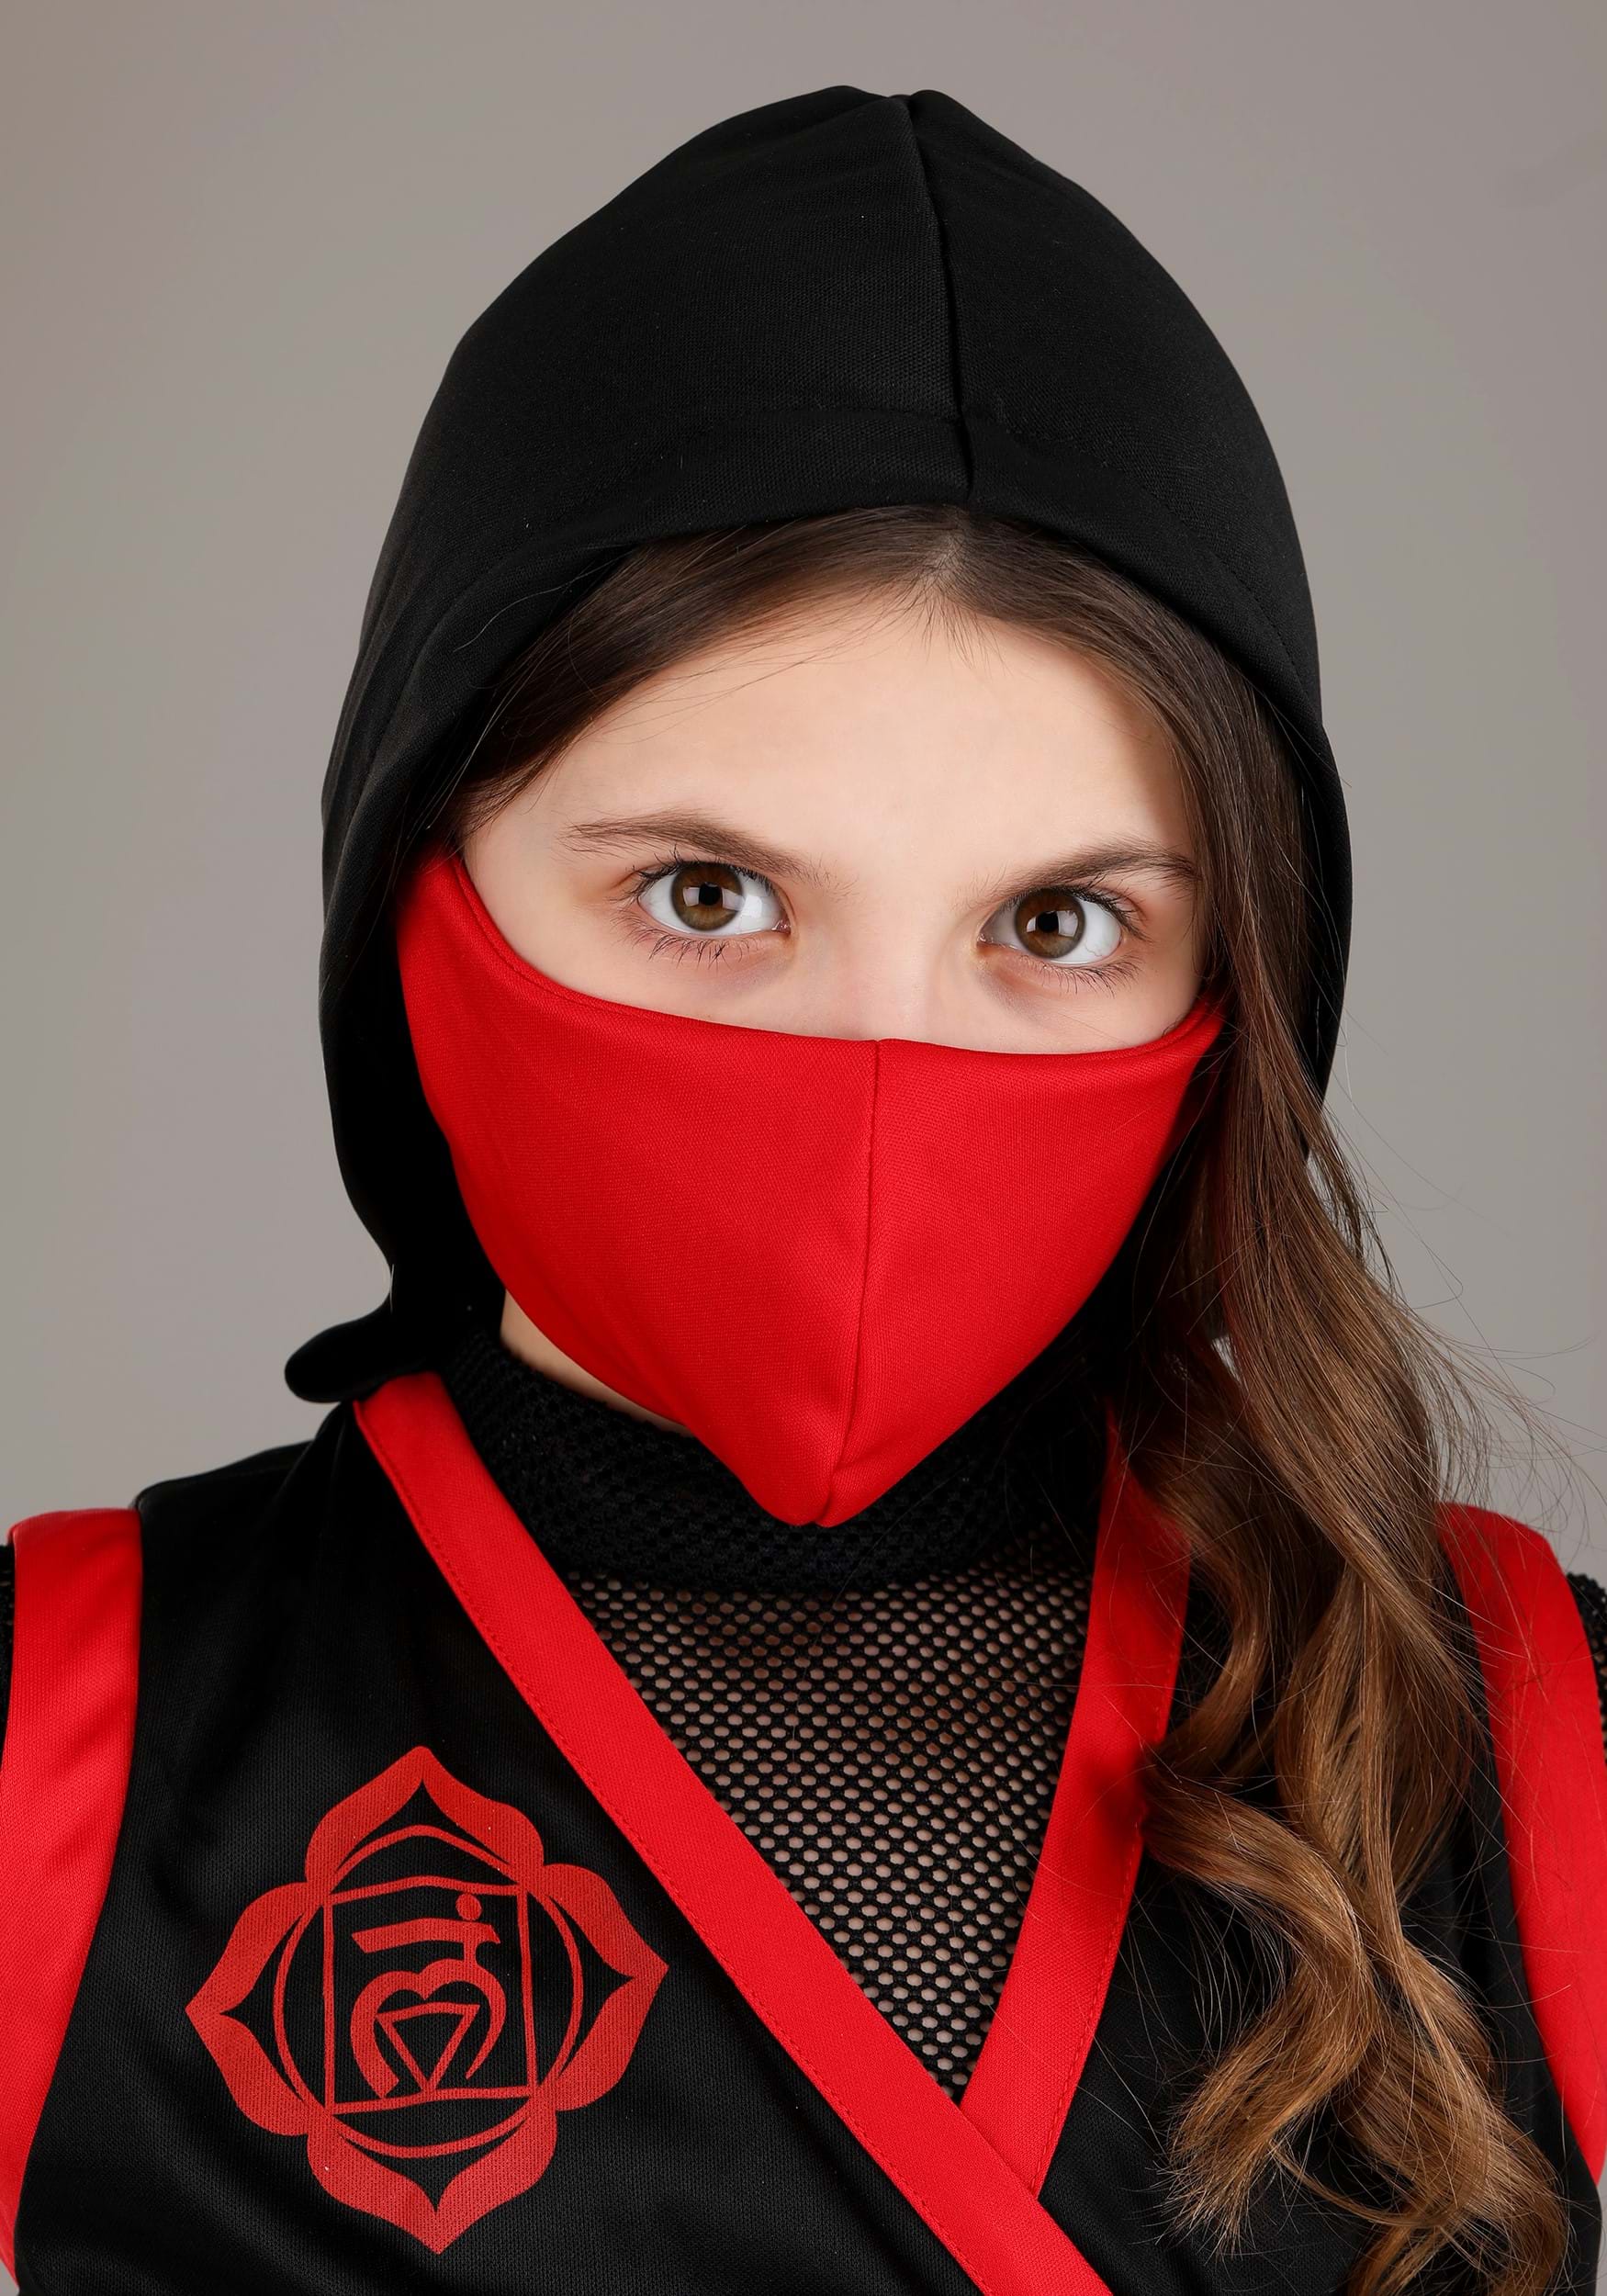 Stealth Ninja Costume For Girls